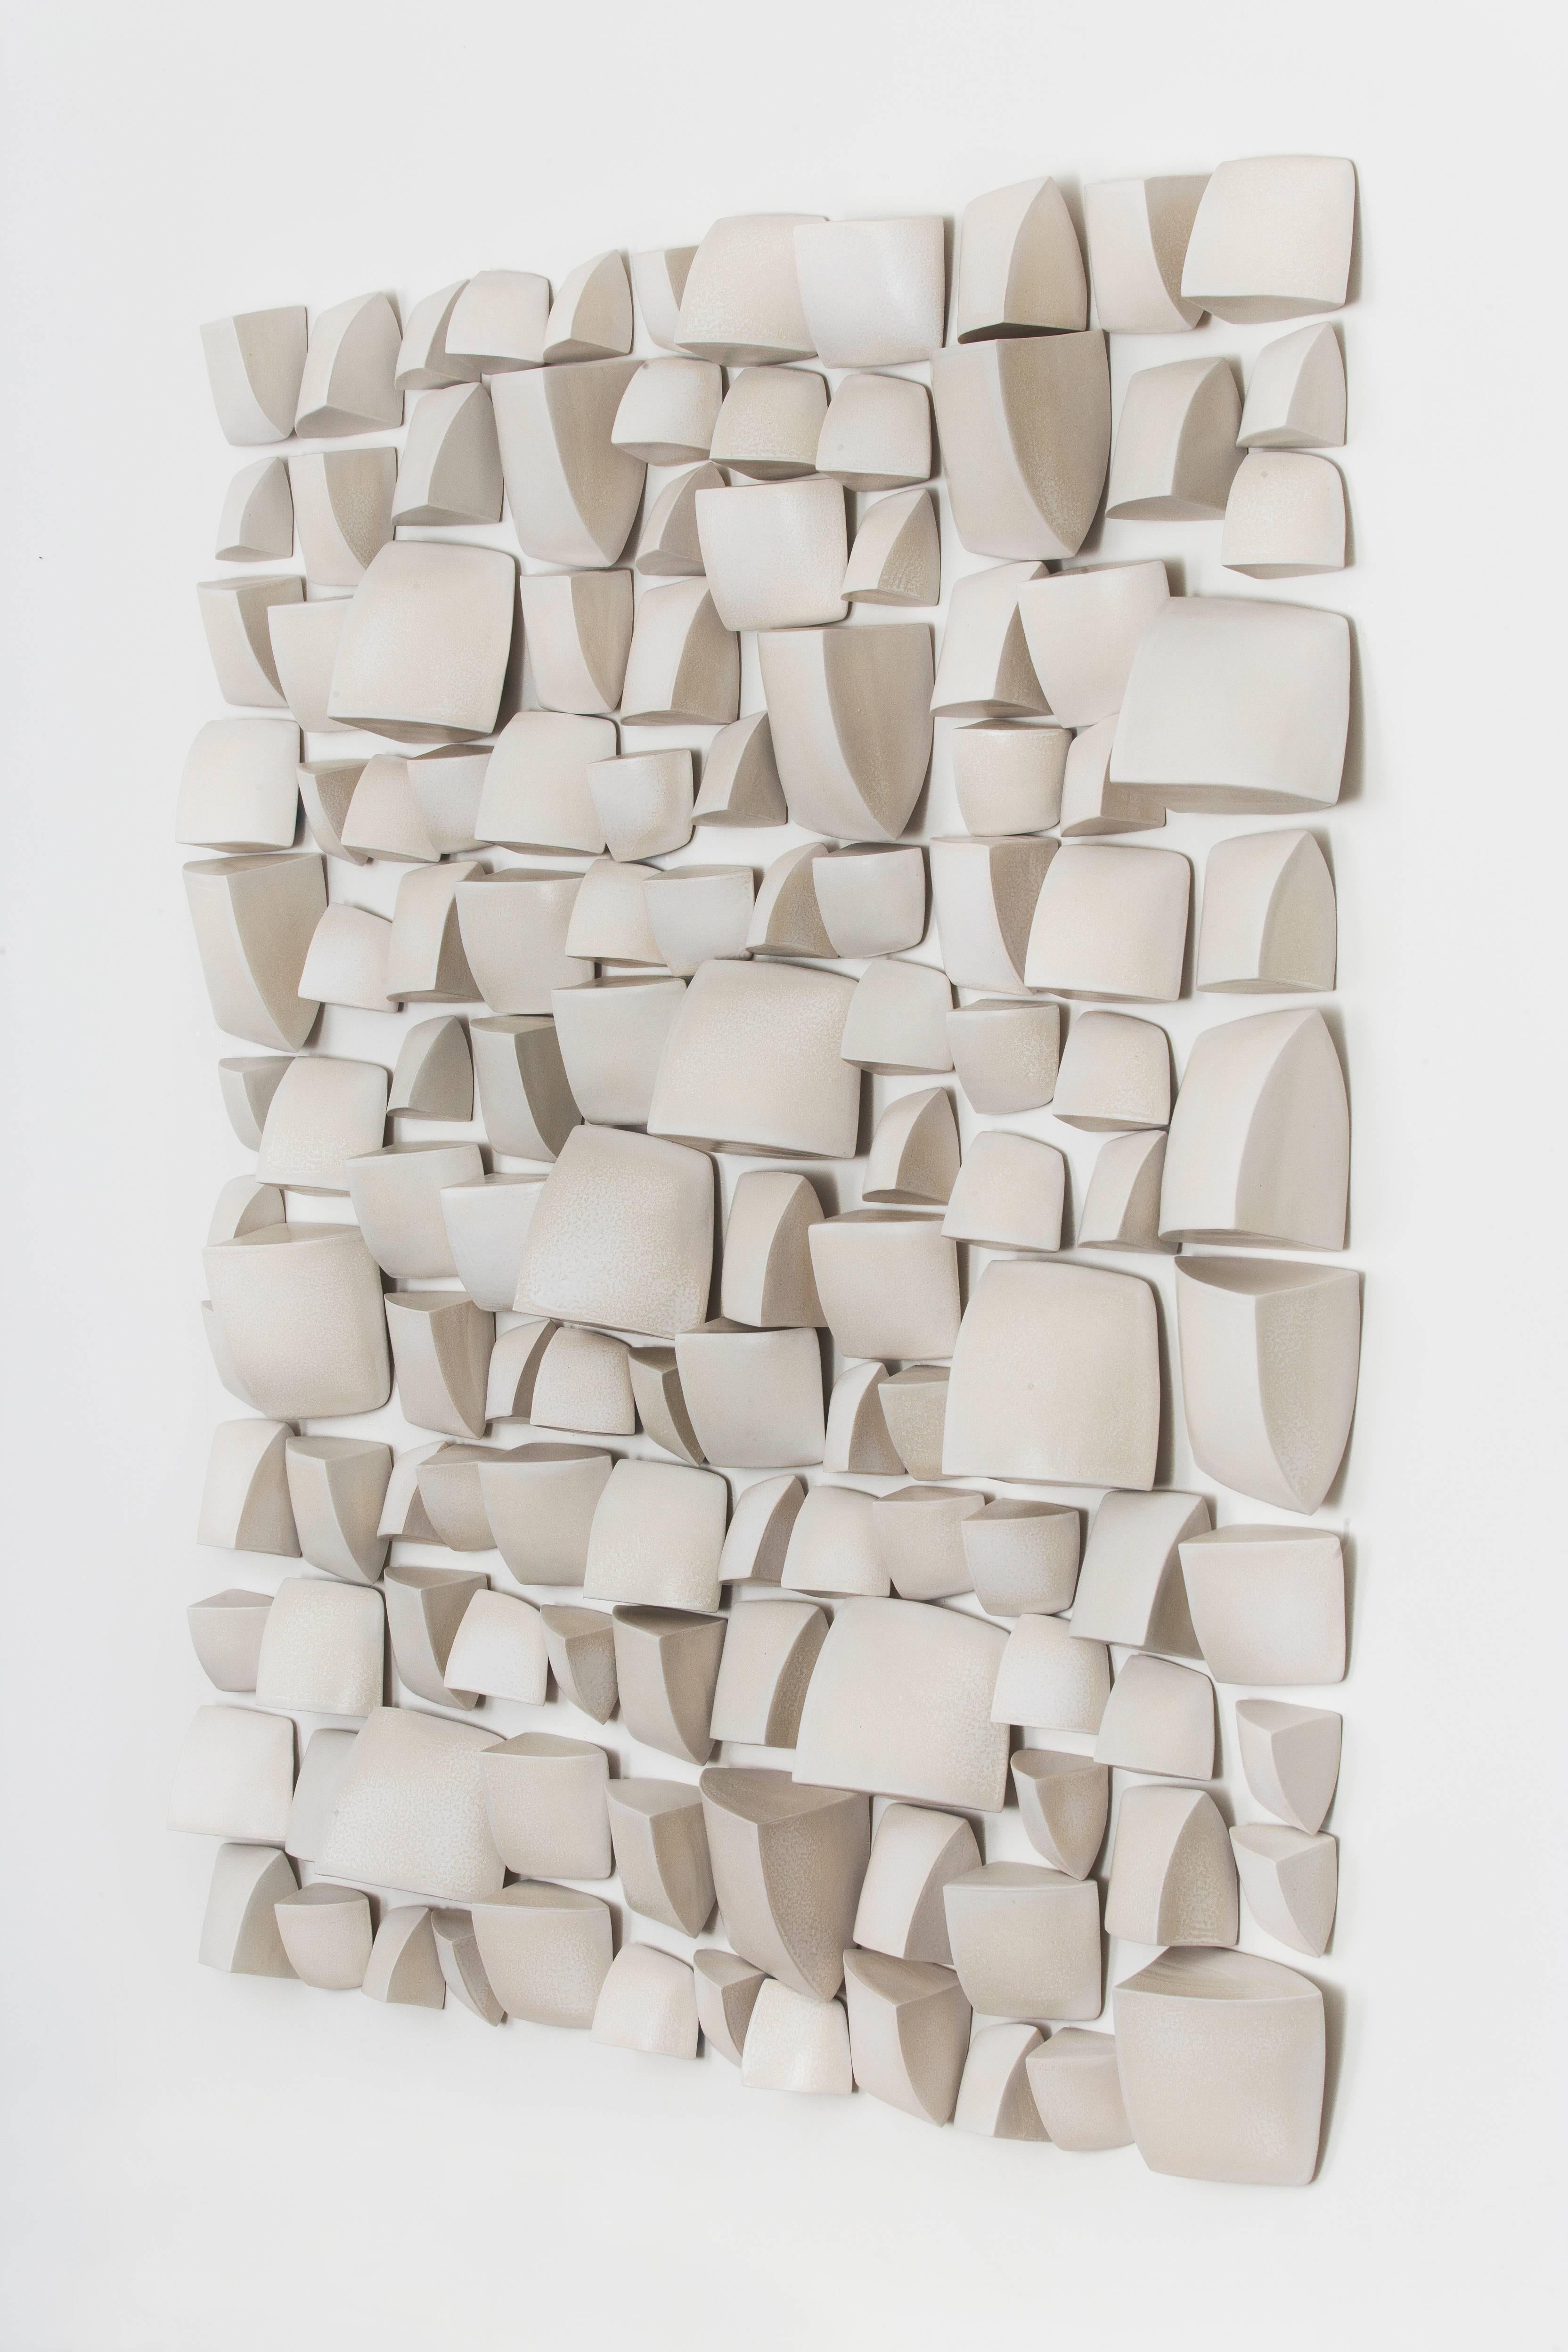 Modern Maren Kloppmann, Wall Pillow Field, 2016, white ceramic wall installation